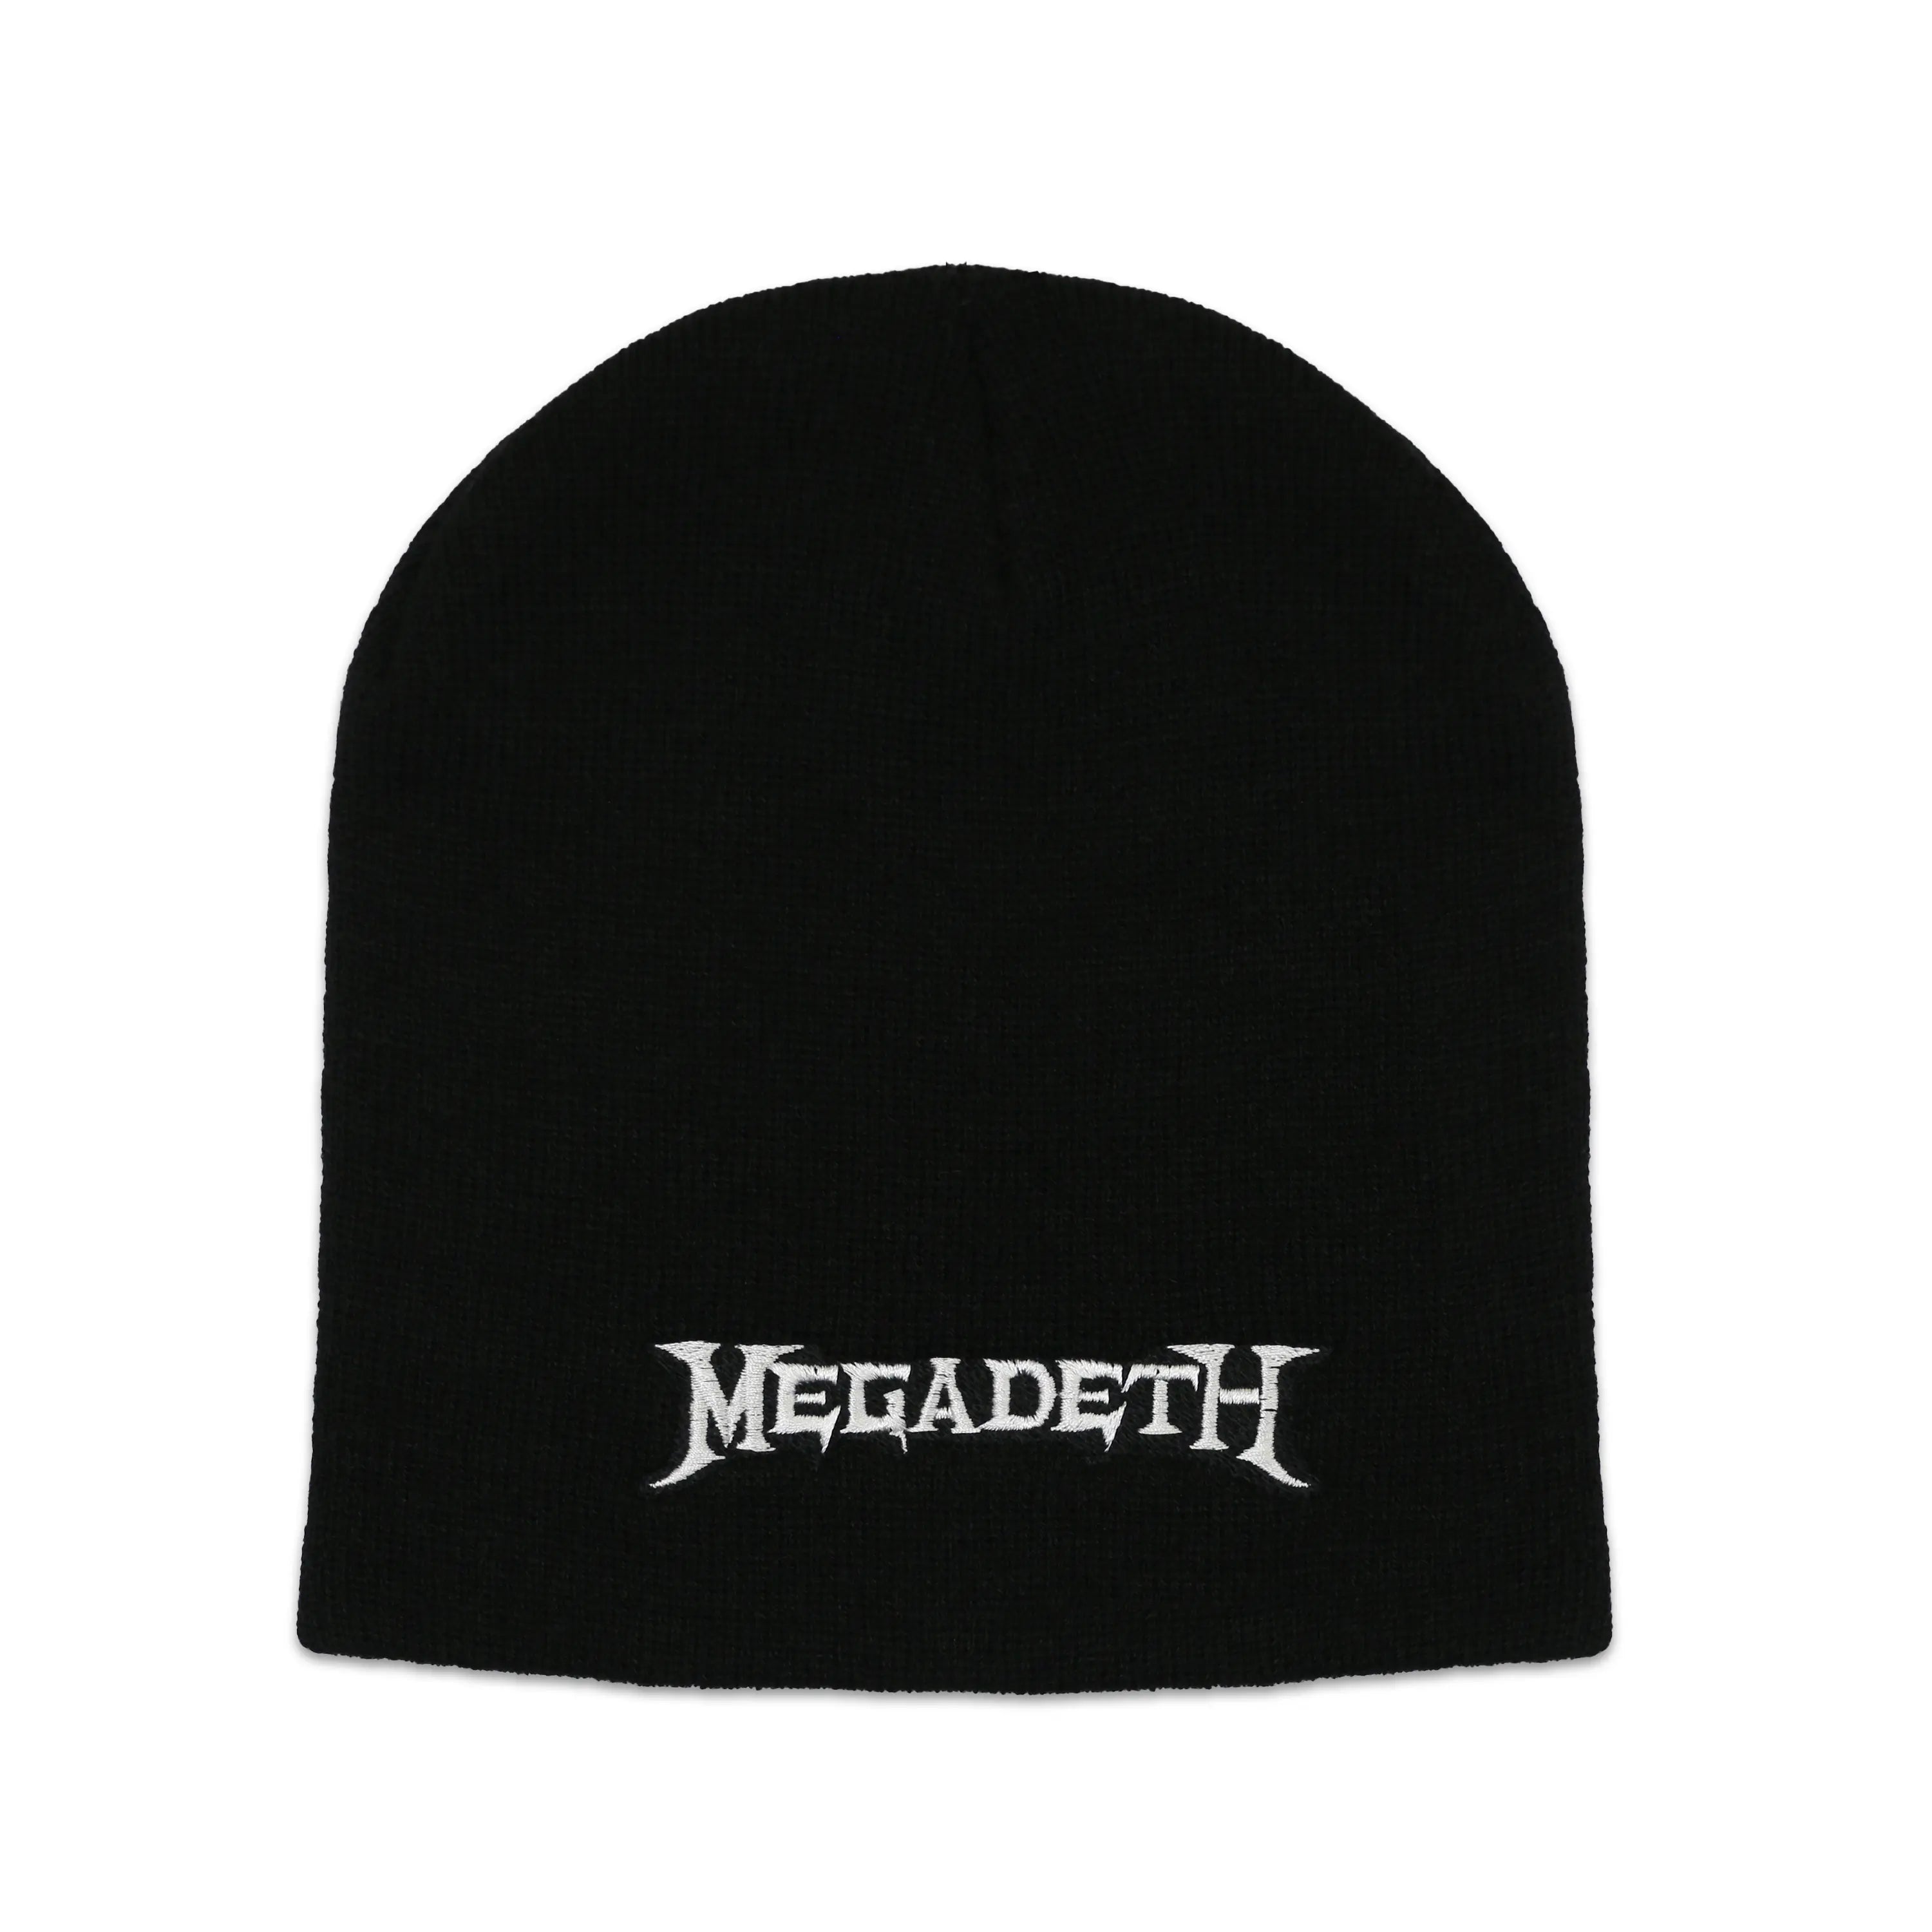 Megadeth - Logo - Black Beanie | Twisted Thread NZ